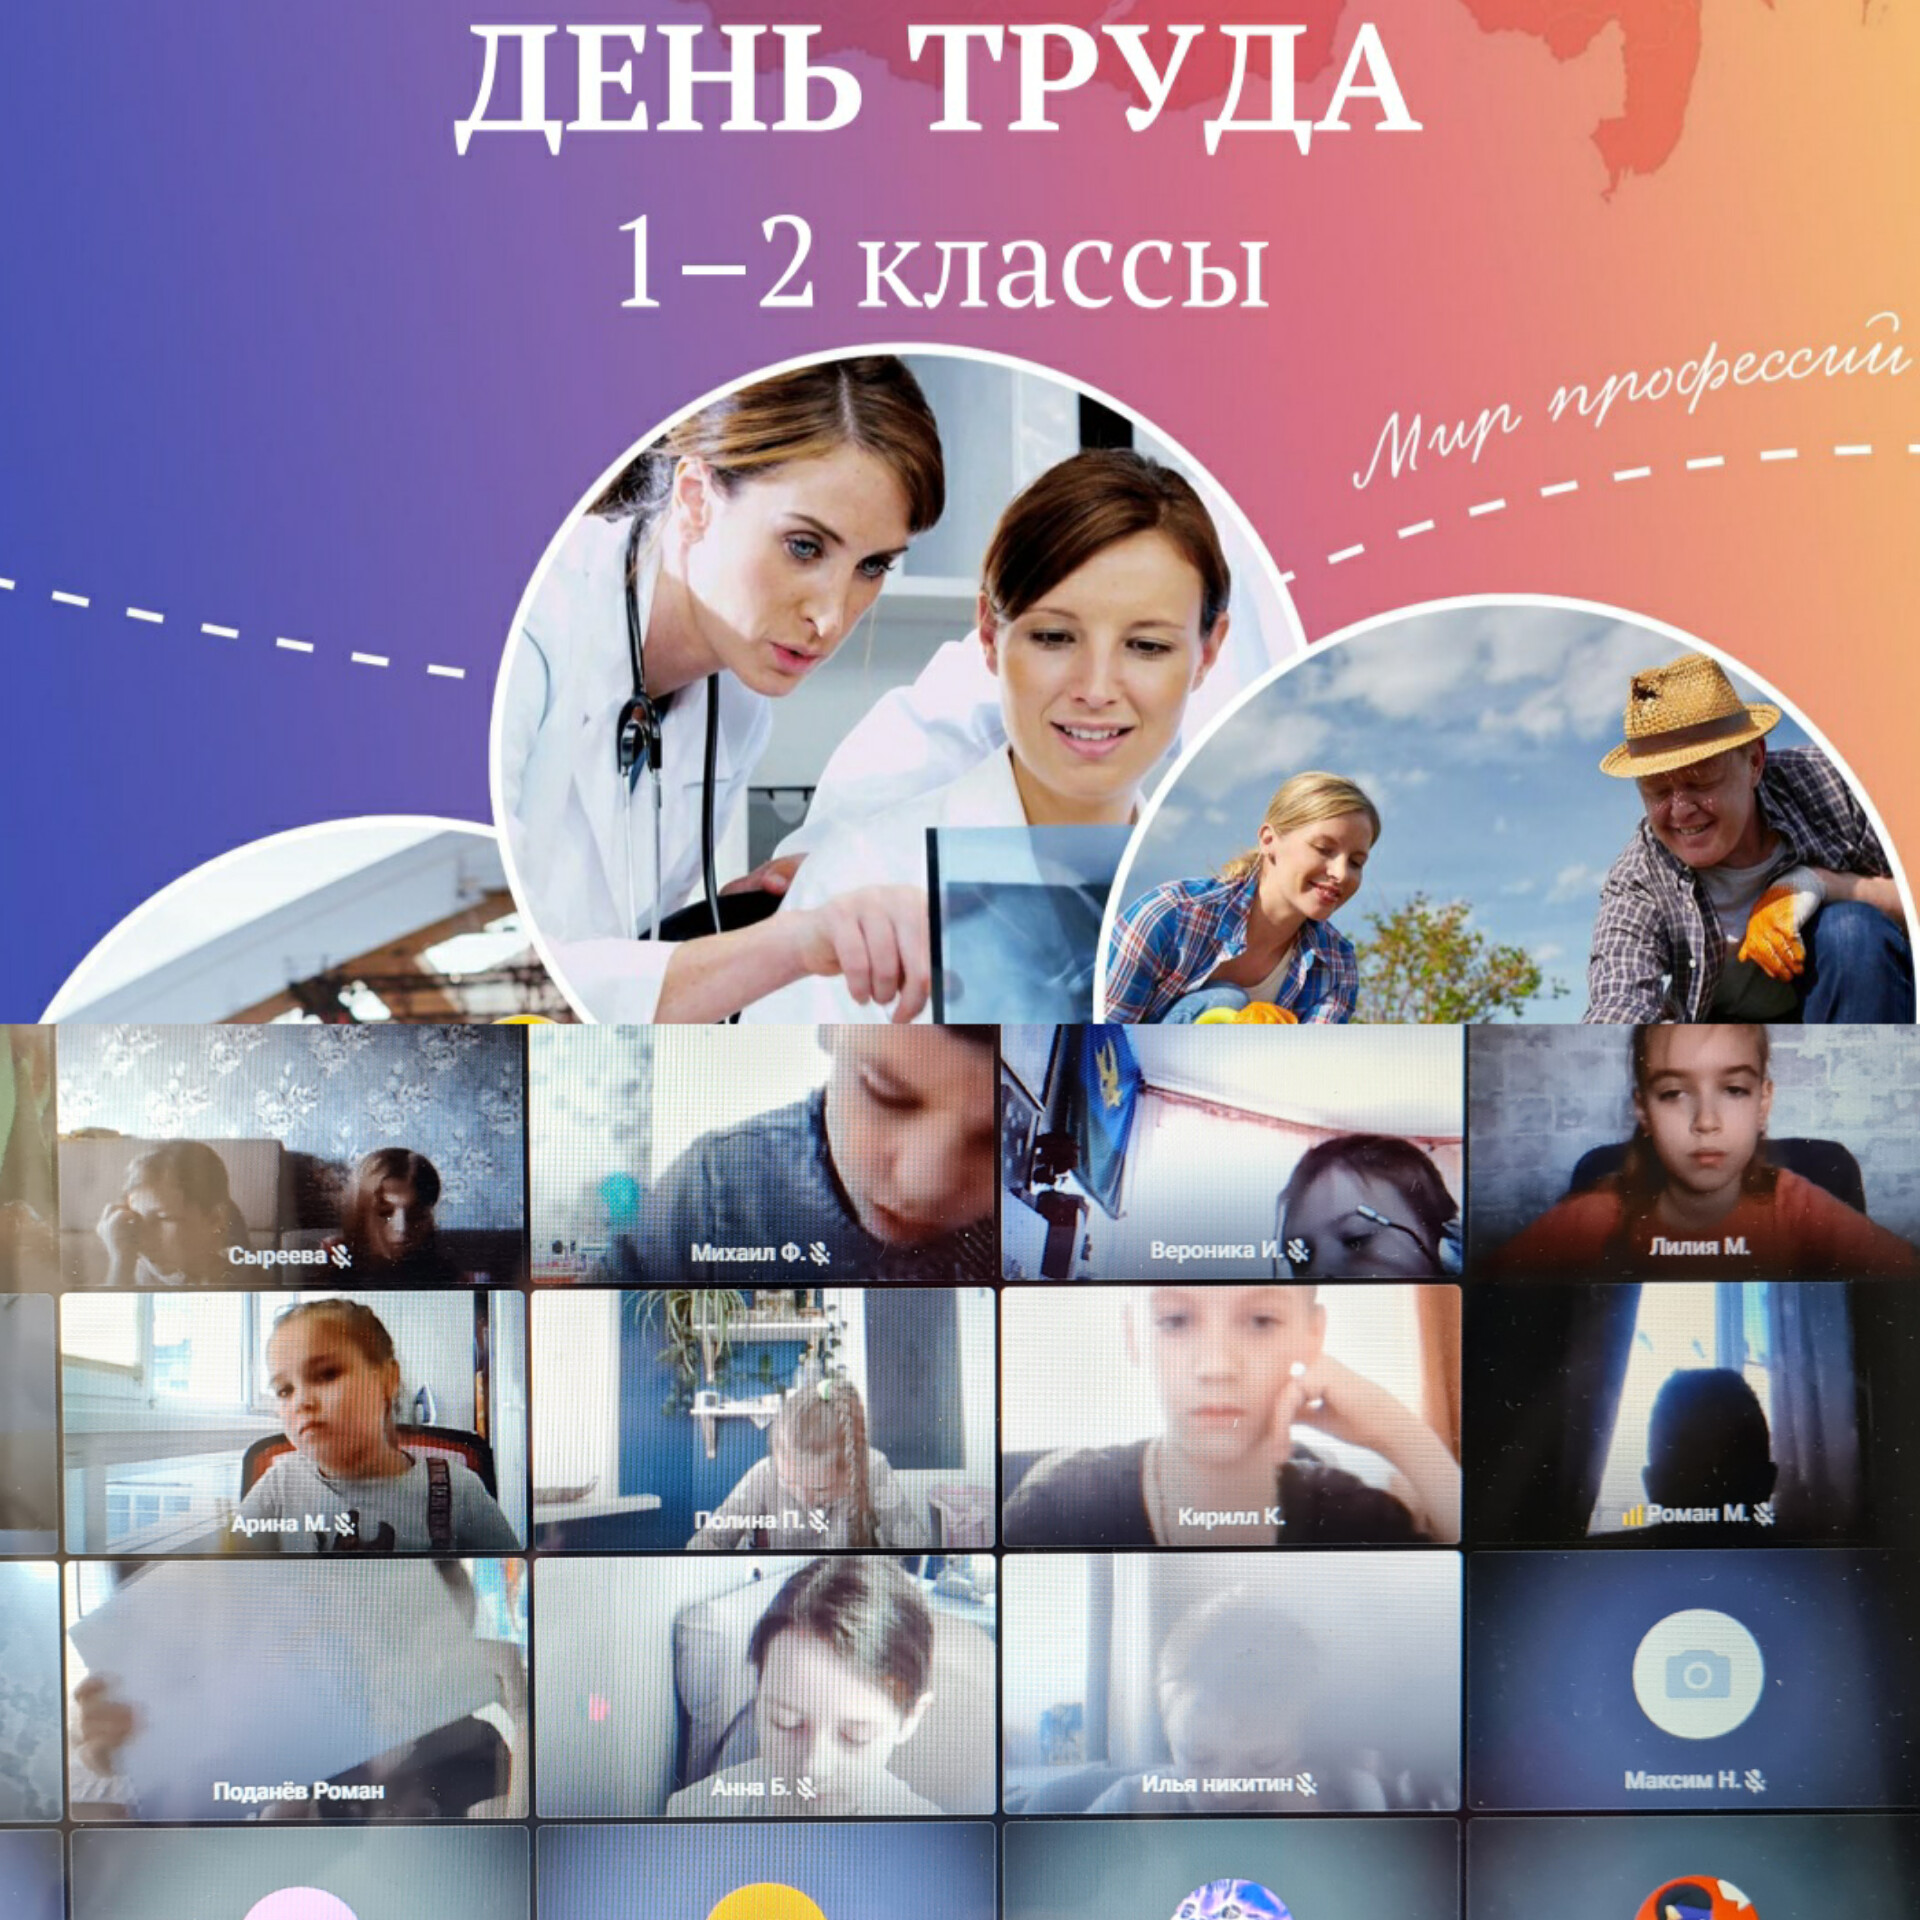 В российских школах 24 апреля занятие «Разговоры о важном» провели на тему «День труда. Мир профессий»..